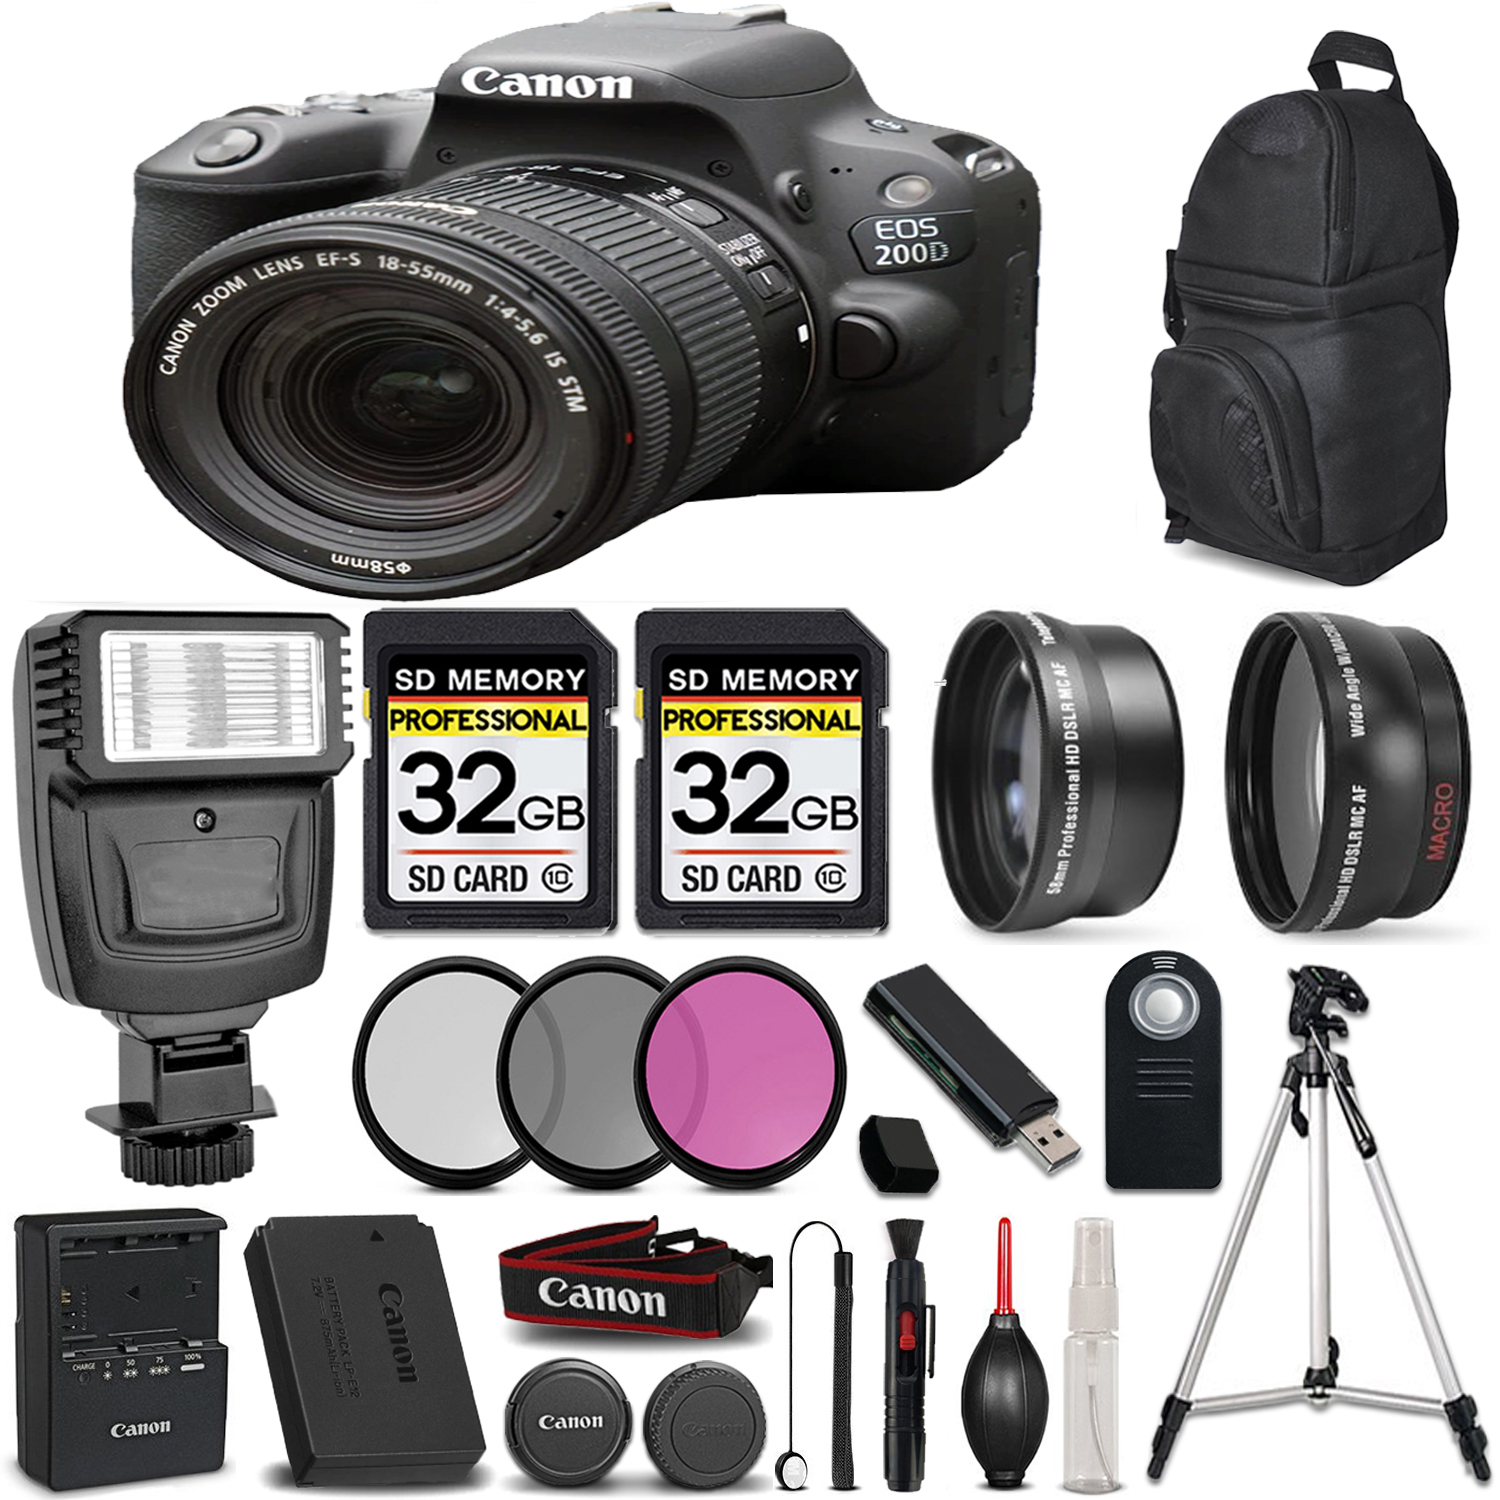 EOS Rebel 200D DSLR Camera(Black) + 18-55mm STM LENS + 64GB + 3 Piece Filter Set *FREE SHIPPING*